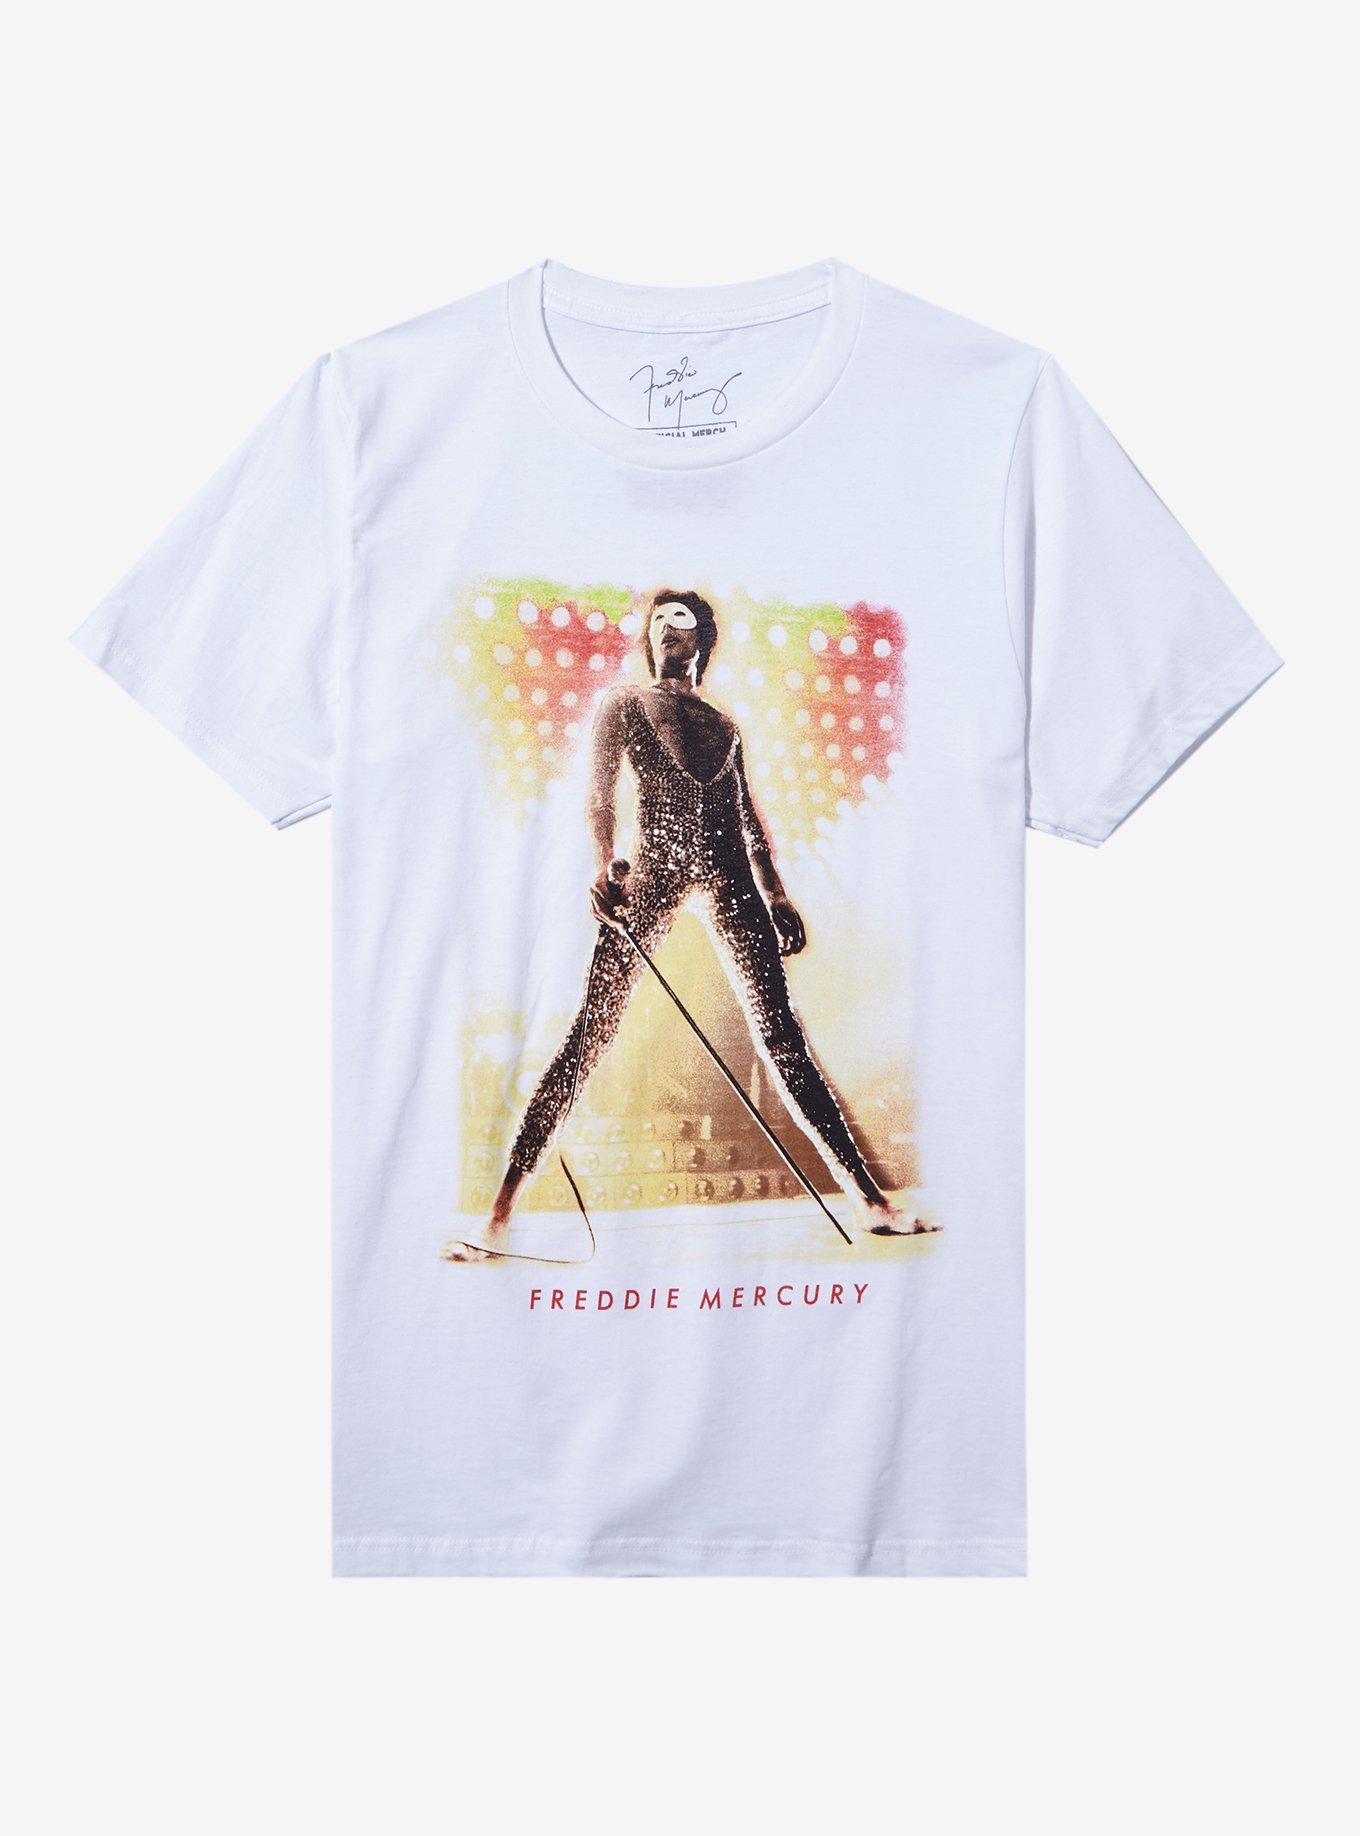 Queen Freddie Mercury Portrait Boyfriend Fit Girls T-Shirt, BRIGHT WHITE, hi-res